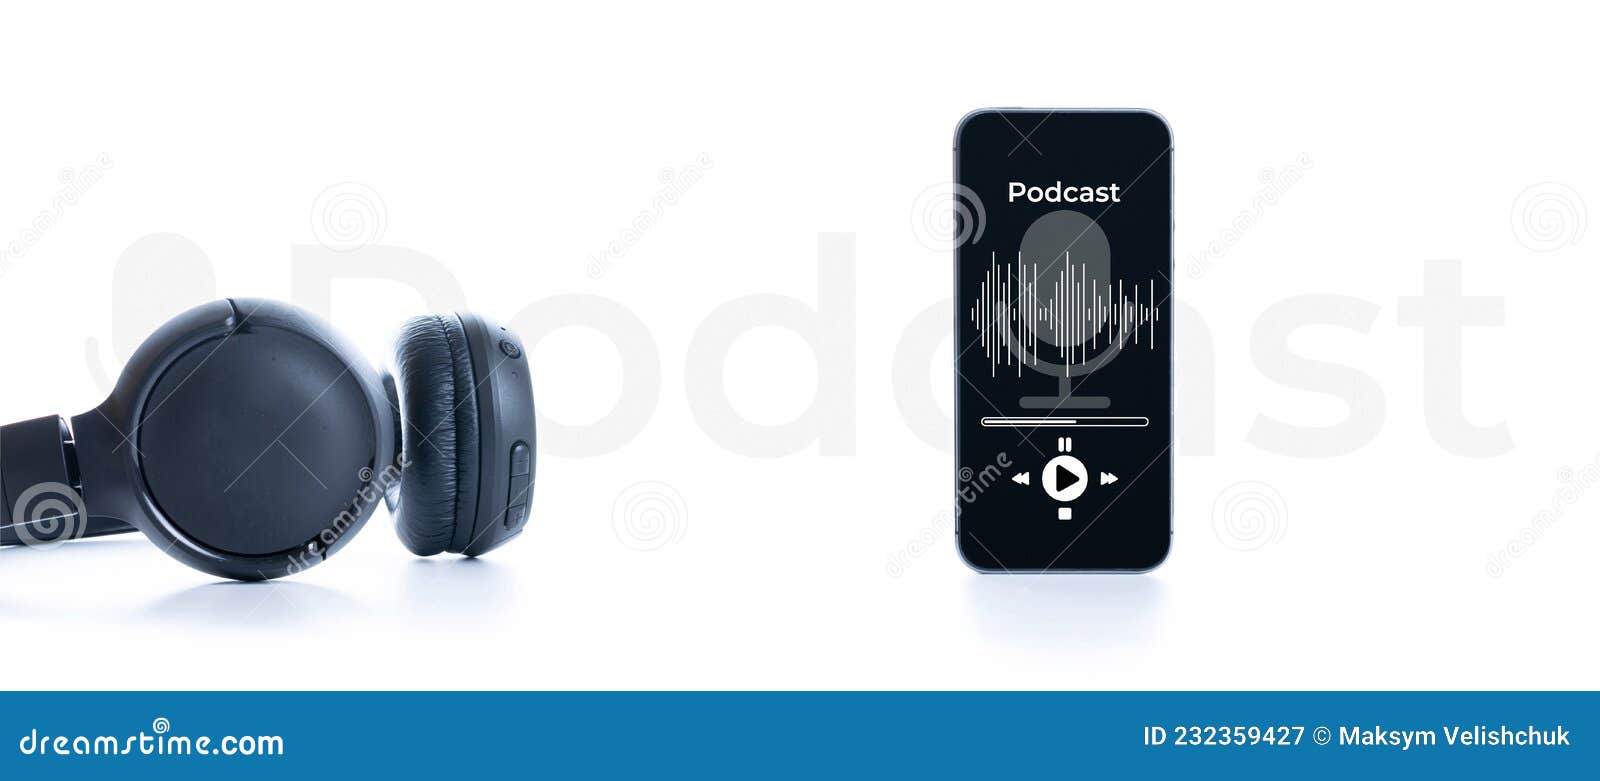 Matériel Audio Podcast. Casque Audio Microphone Son Application